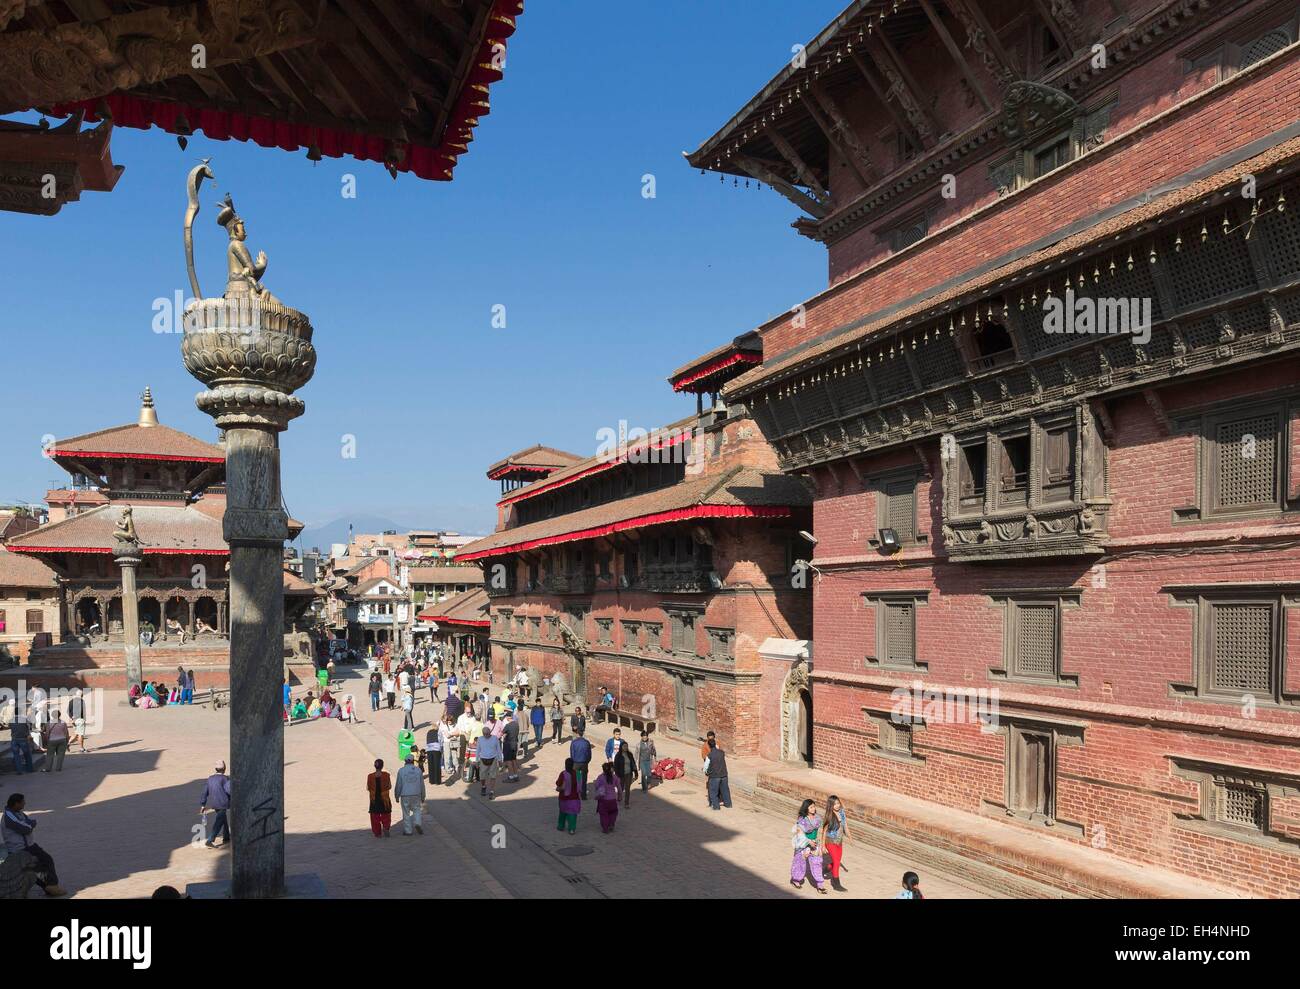 Le Népal, vallée de Kathmandu, Patan, Durbar Square, inscrite au Patrimoine Mondial de l'UNESCO, 14ème siècle, Palais Royal, Musée de Patan, ancienne résidence des rois Malla Banque D'Images